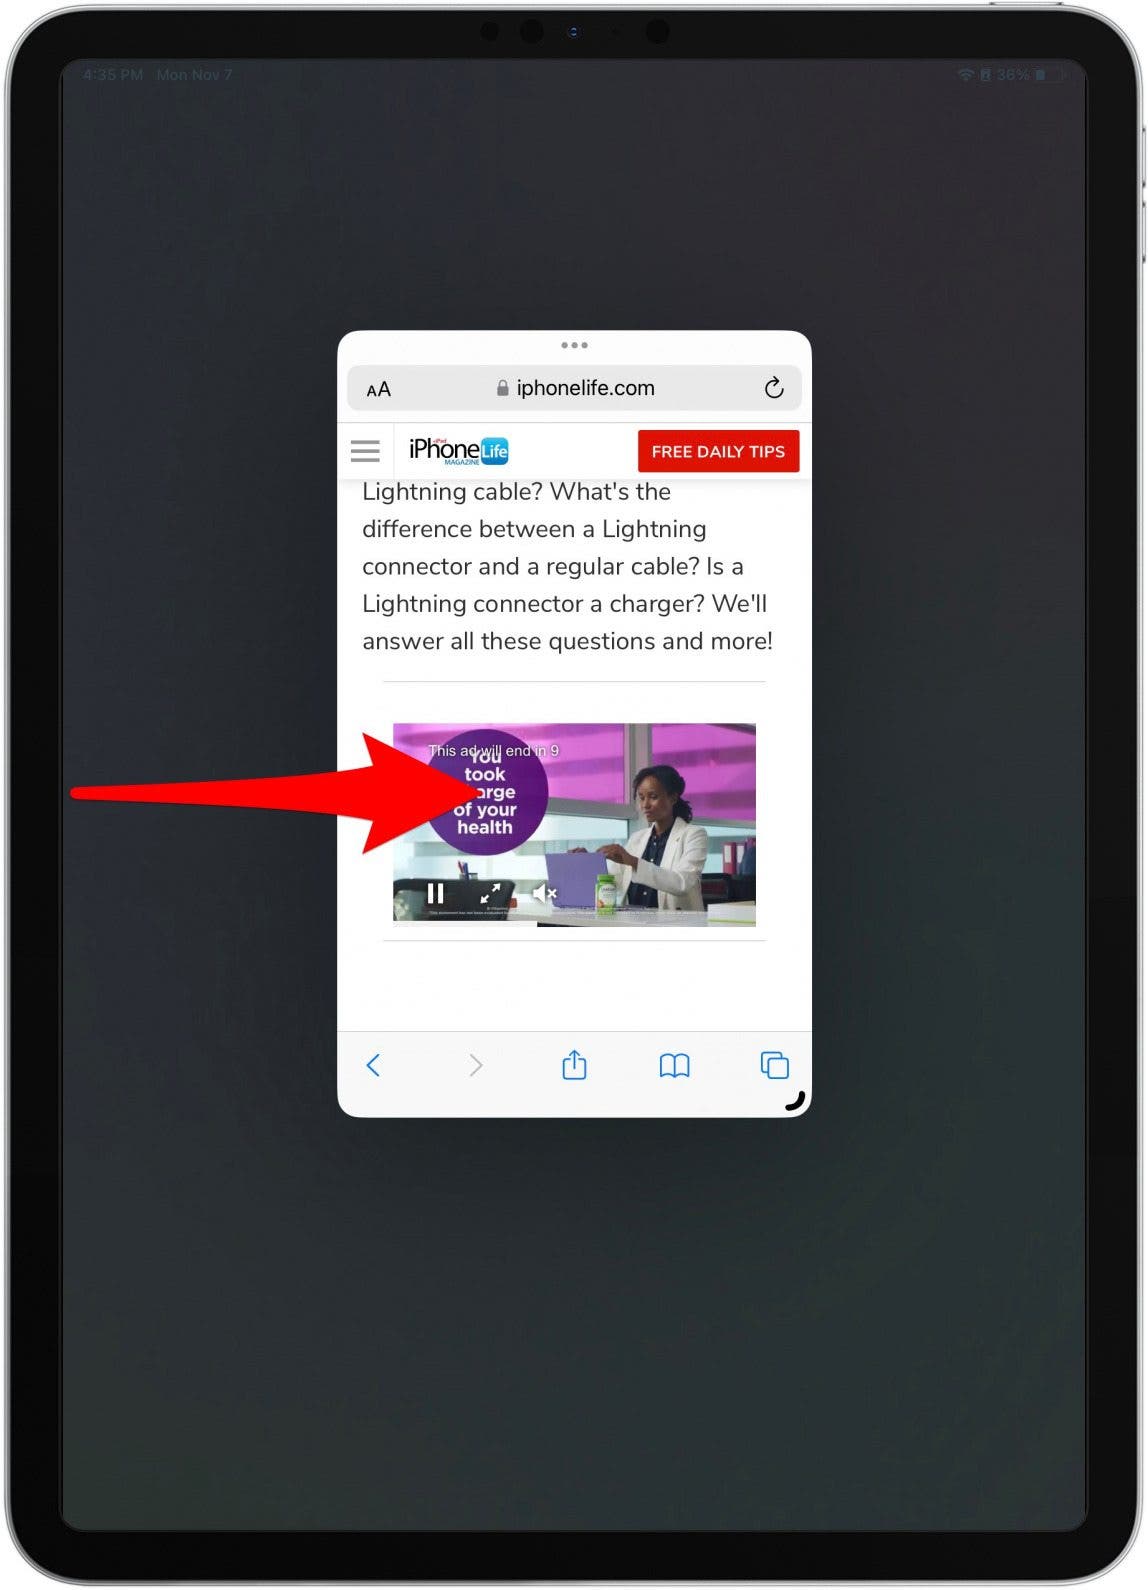 Abra la barra lateral deslizando el dedo desde el lado izquierdo de la pantalla.  Si está utilizando su iPad horizontalmente, la barra lateral se mostrará automáticamente.